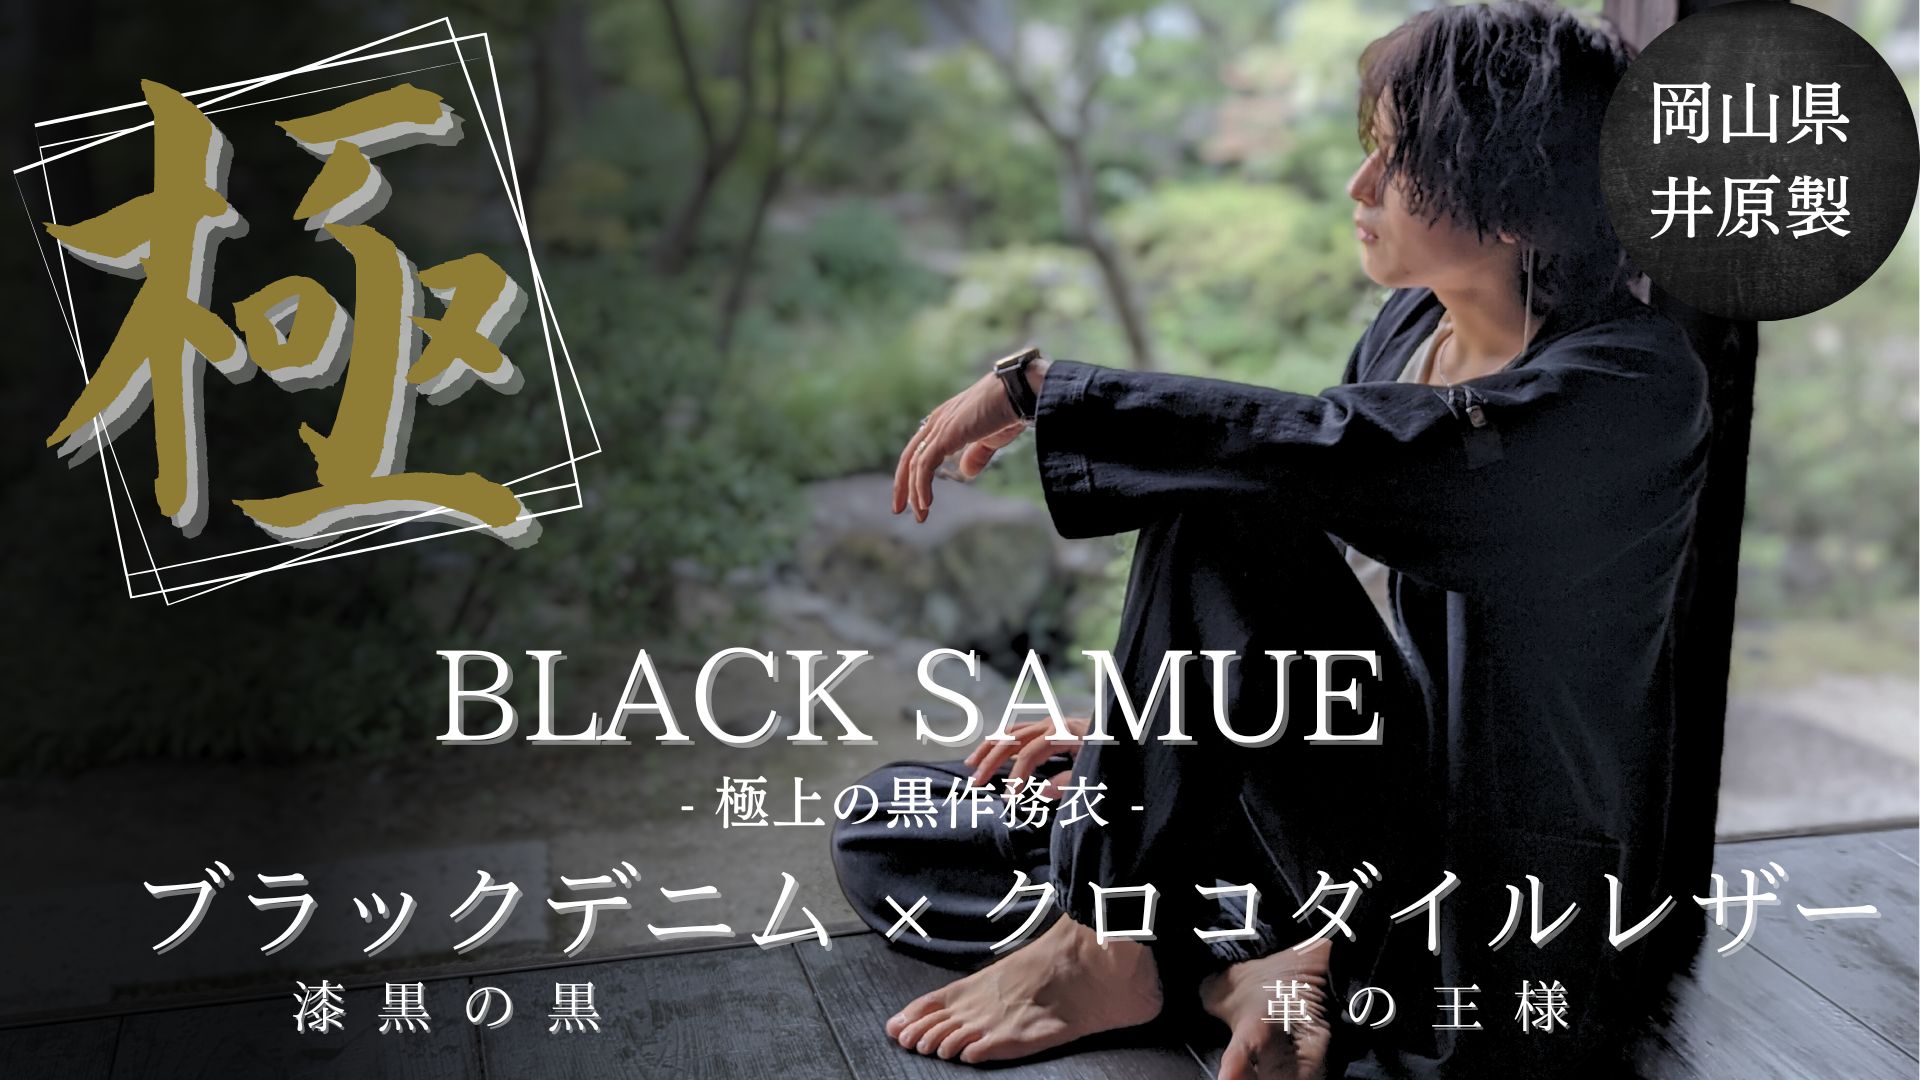 9月12日(火)から先行販売！！最高峰の素材のみで作り上げた「黒作務衣 / BLACK SAMUE」